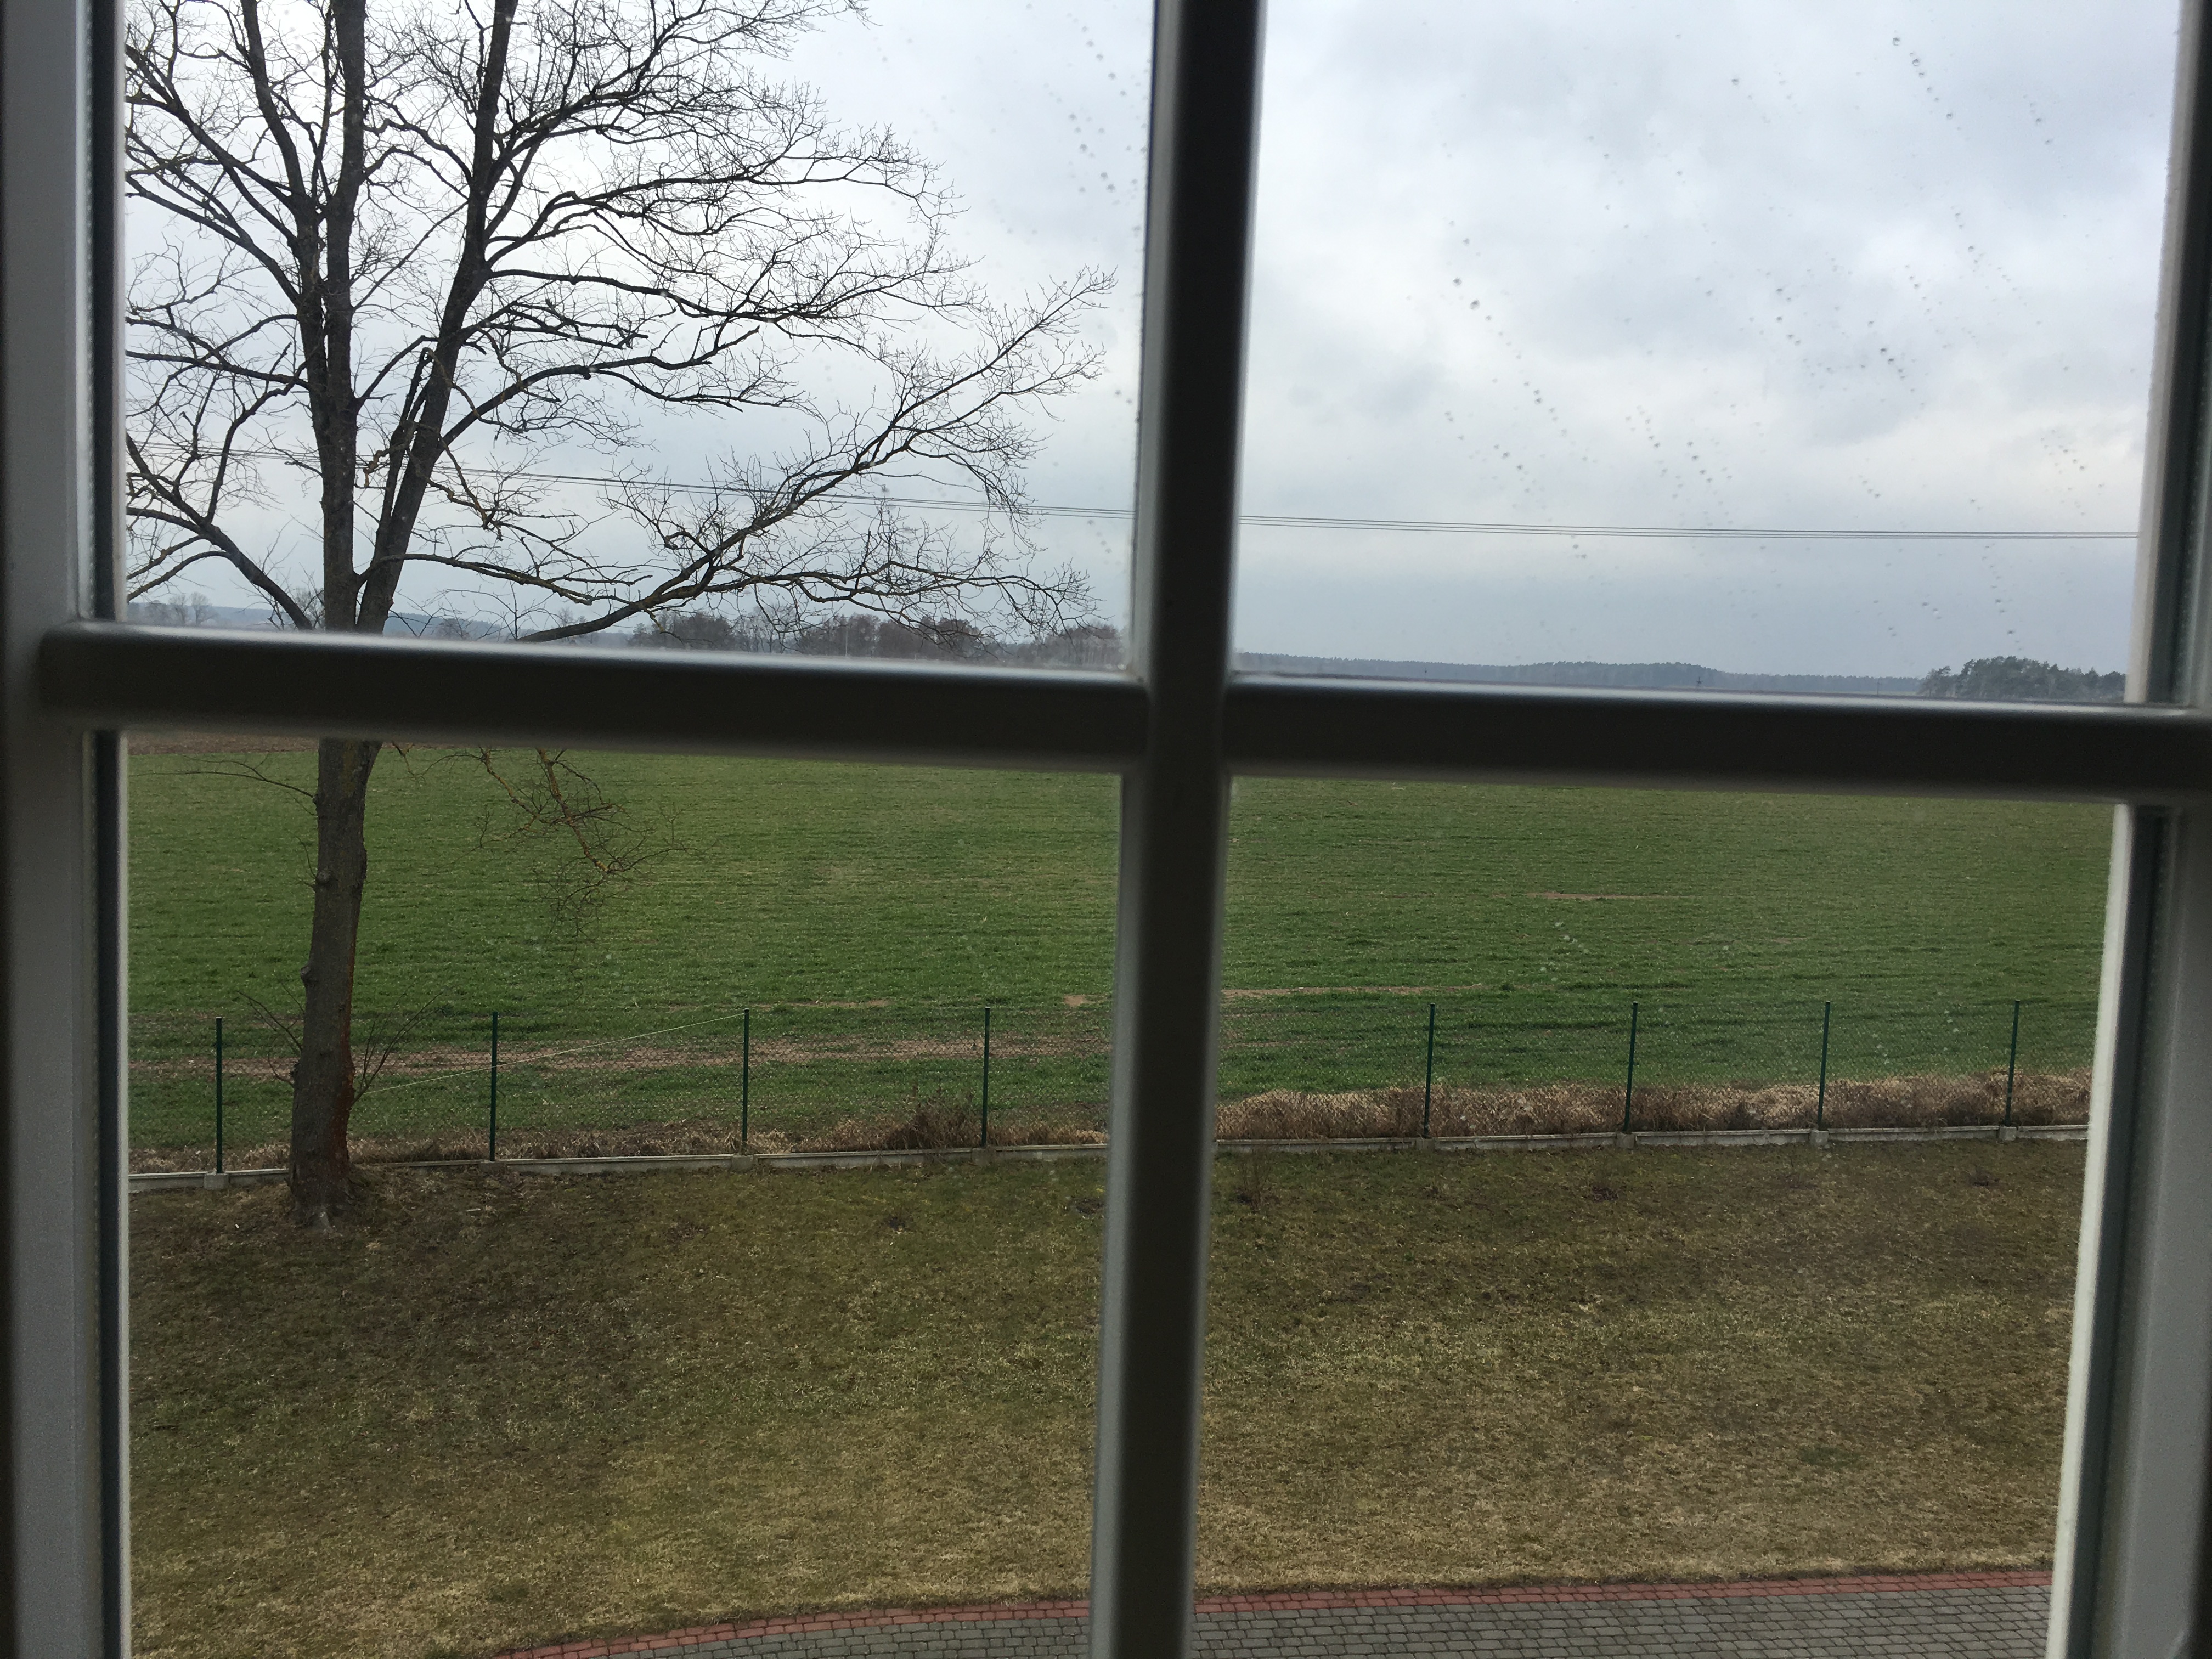 Widok przez okno z szprosem na otwartą przestrzeń z zieloną trawą, a z lewej strony wysokie drzewo bez liści.